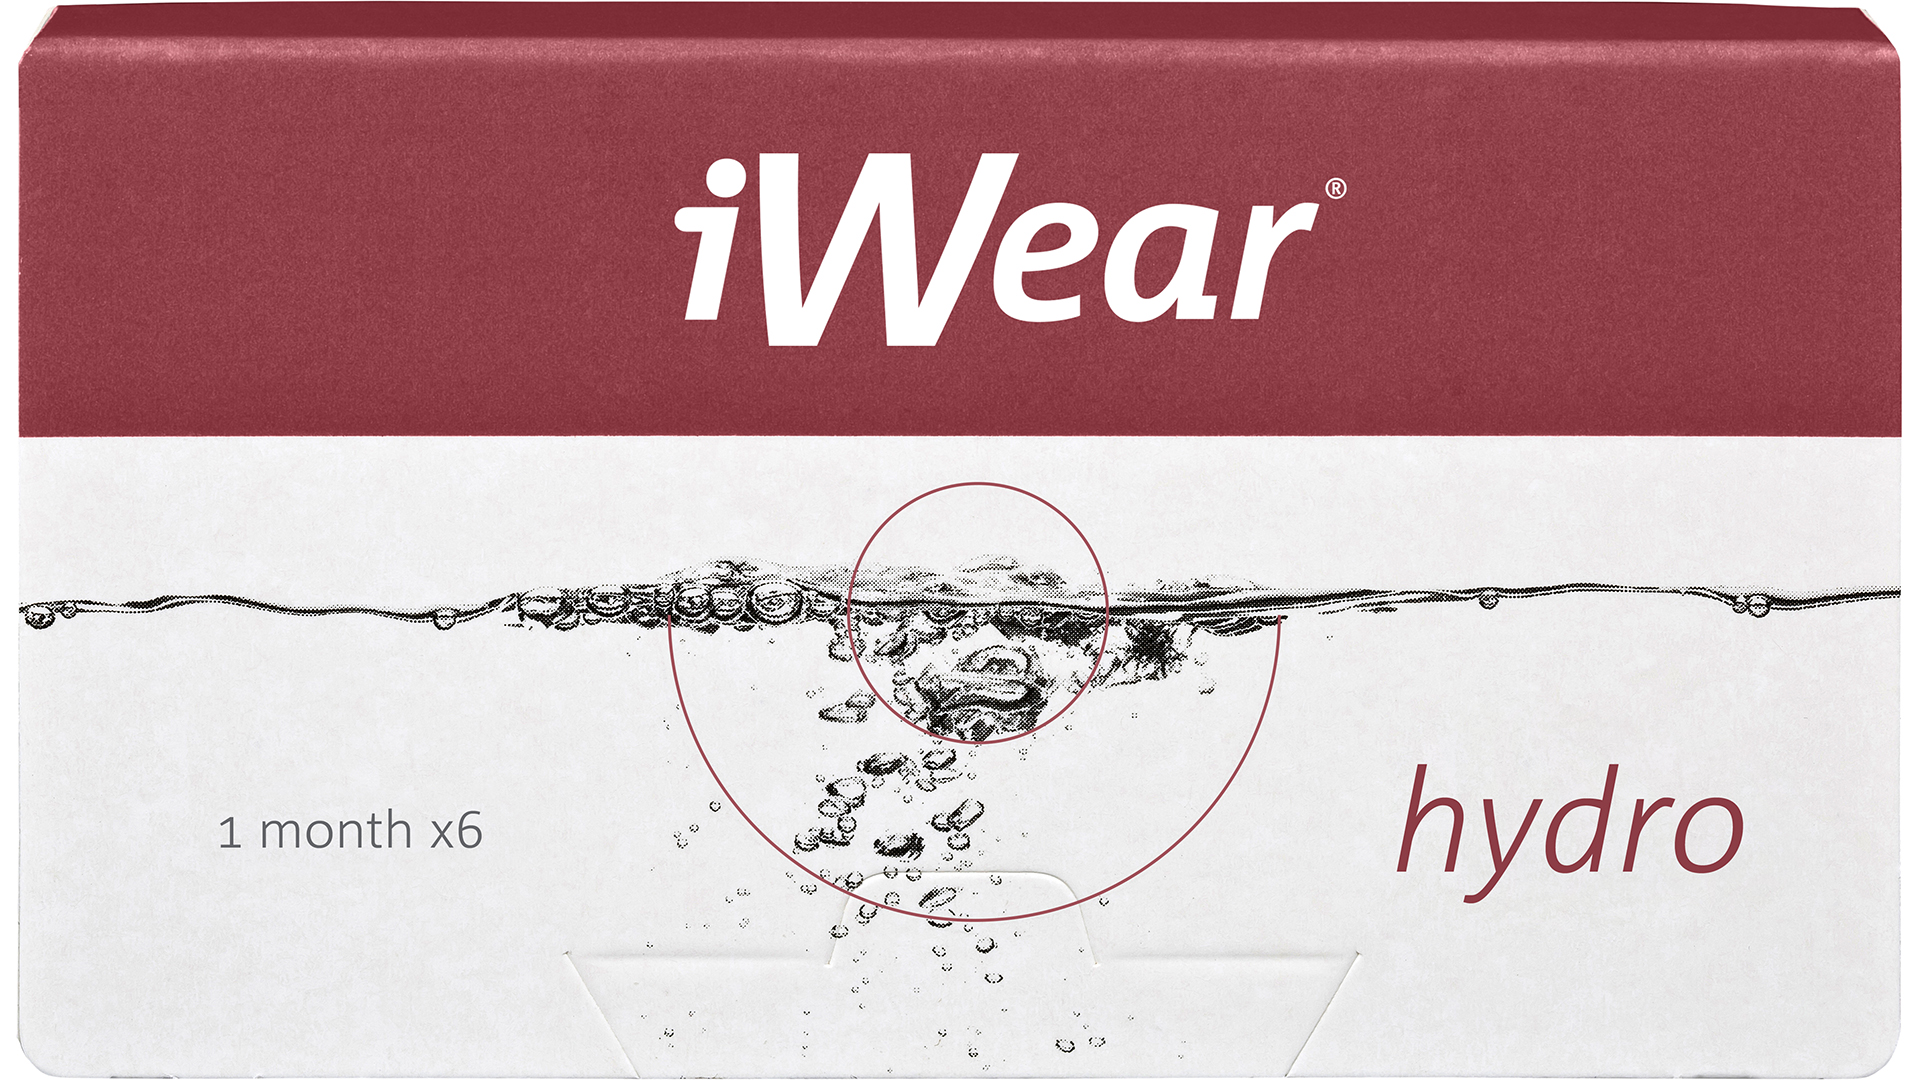 Front iWear hydro